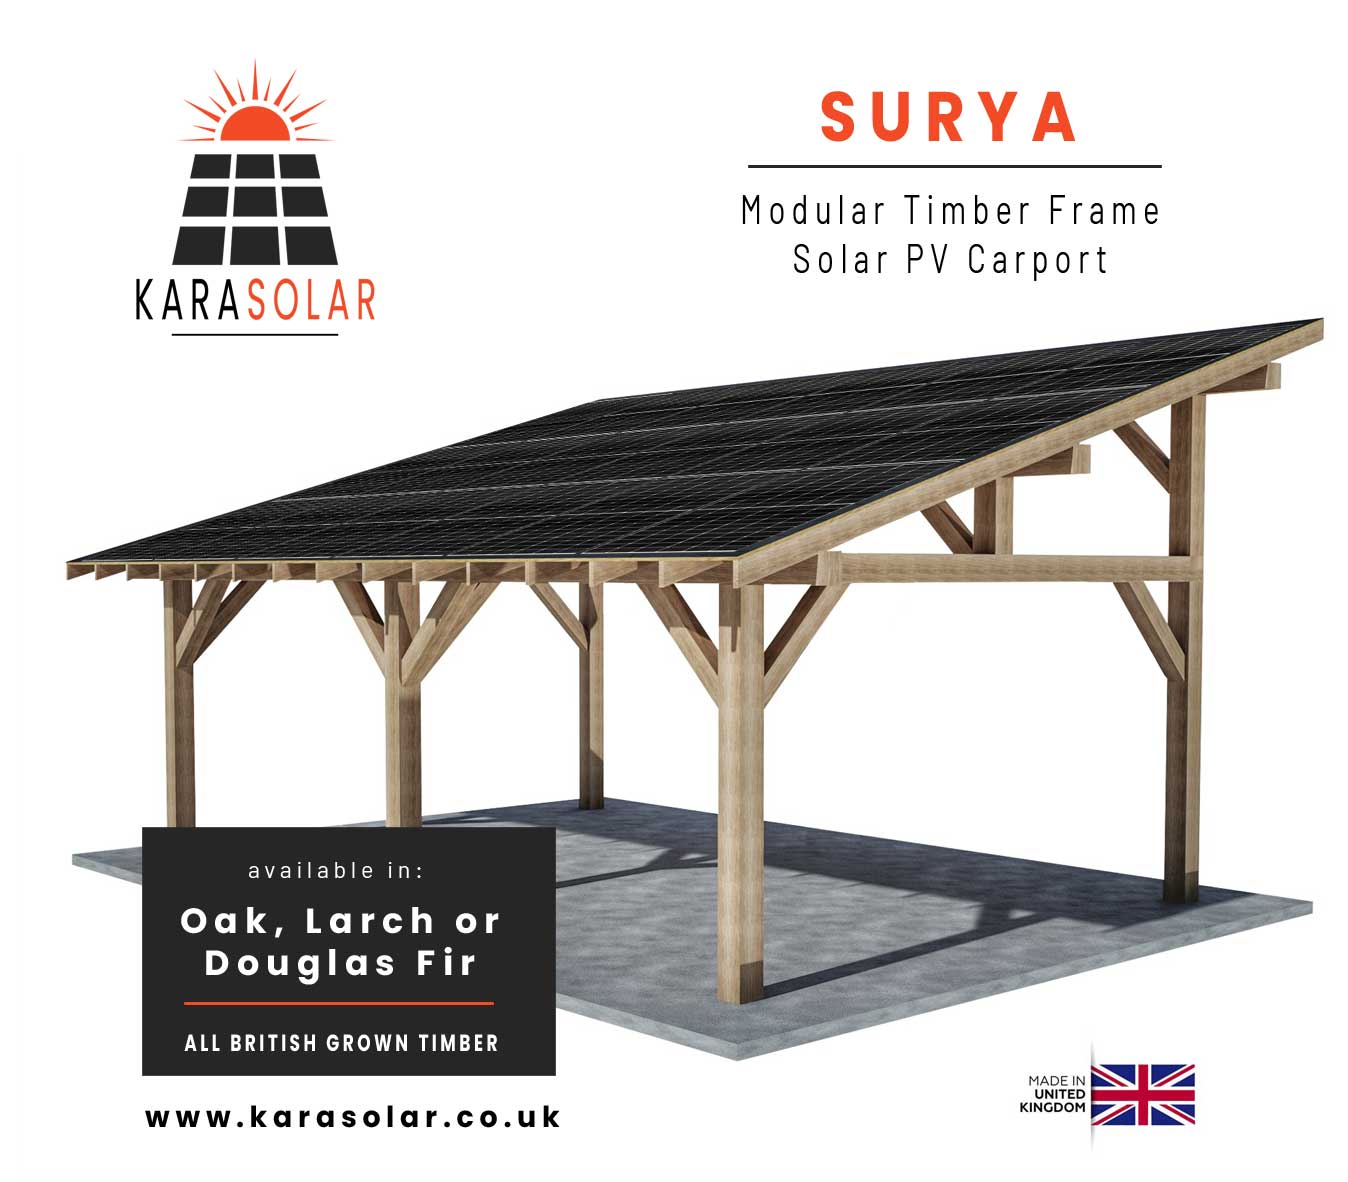 Surya-Timber-Solar-Carport-Title-Image